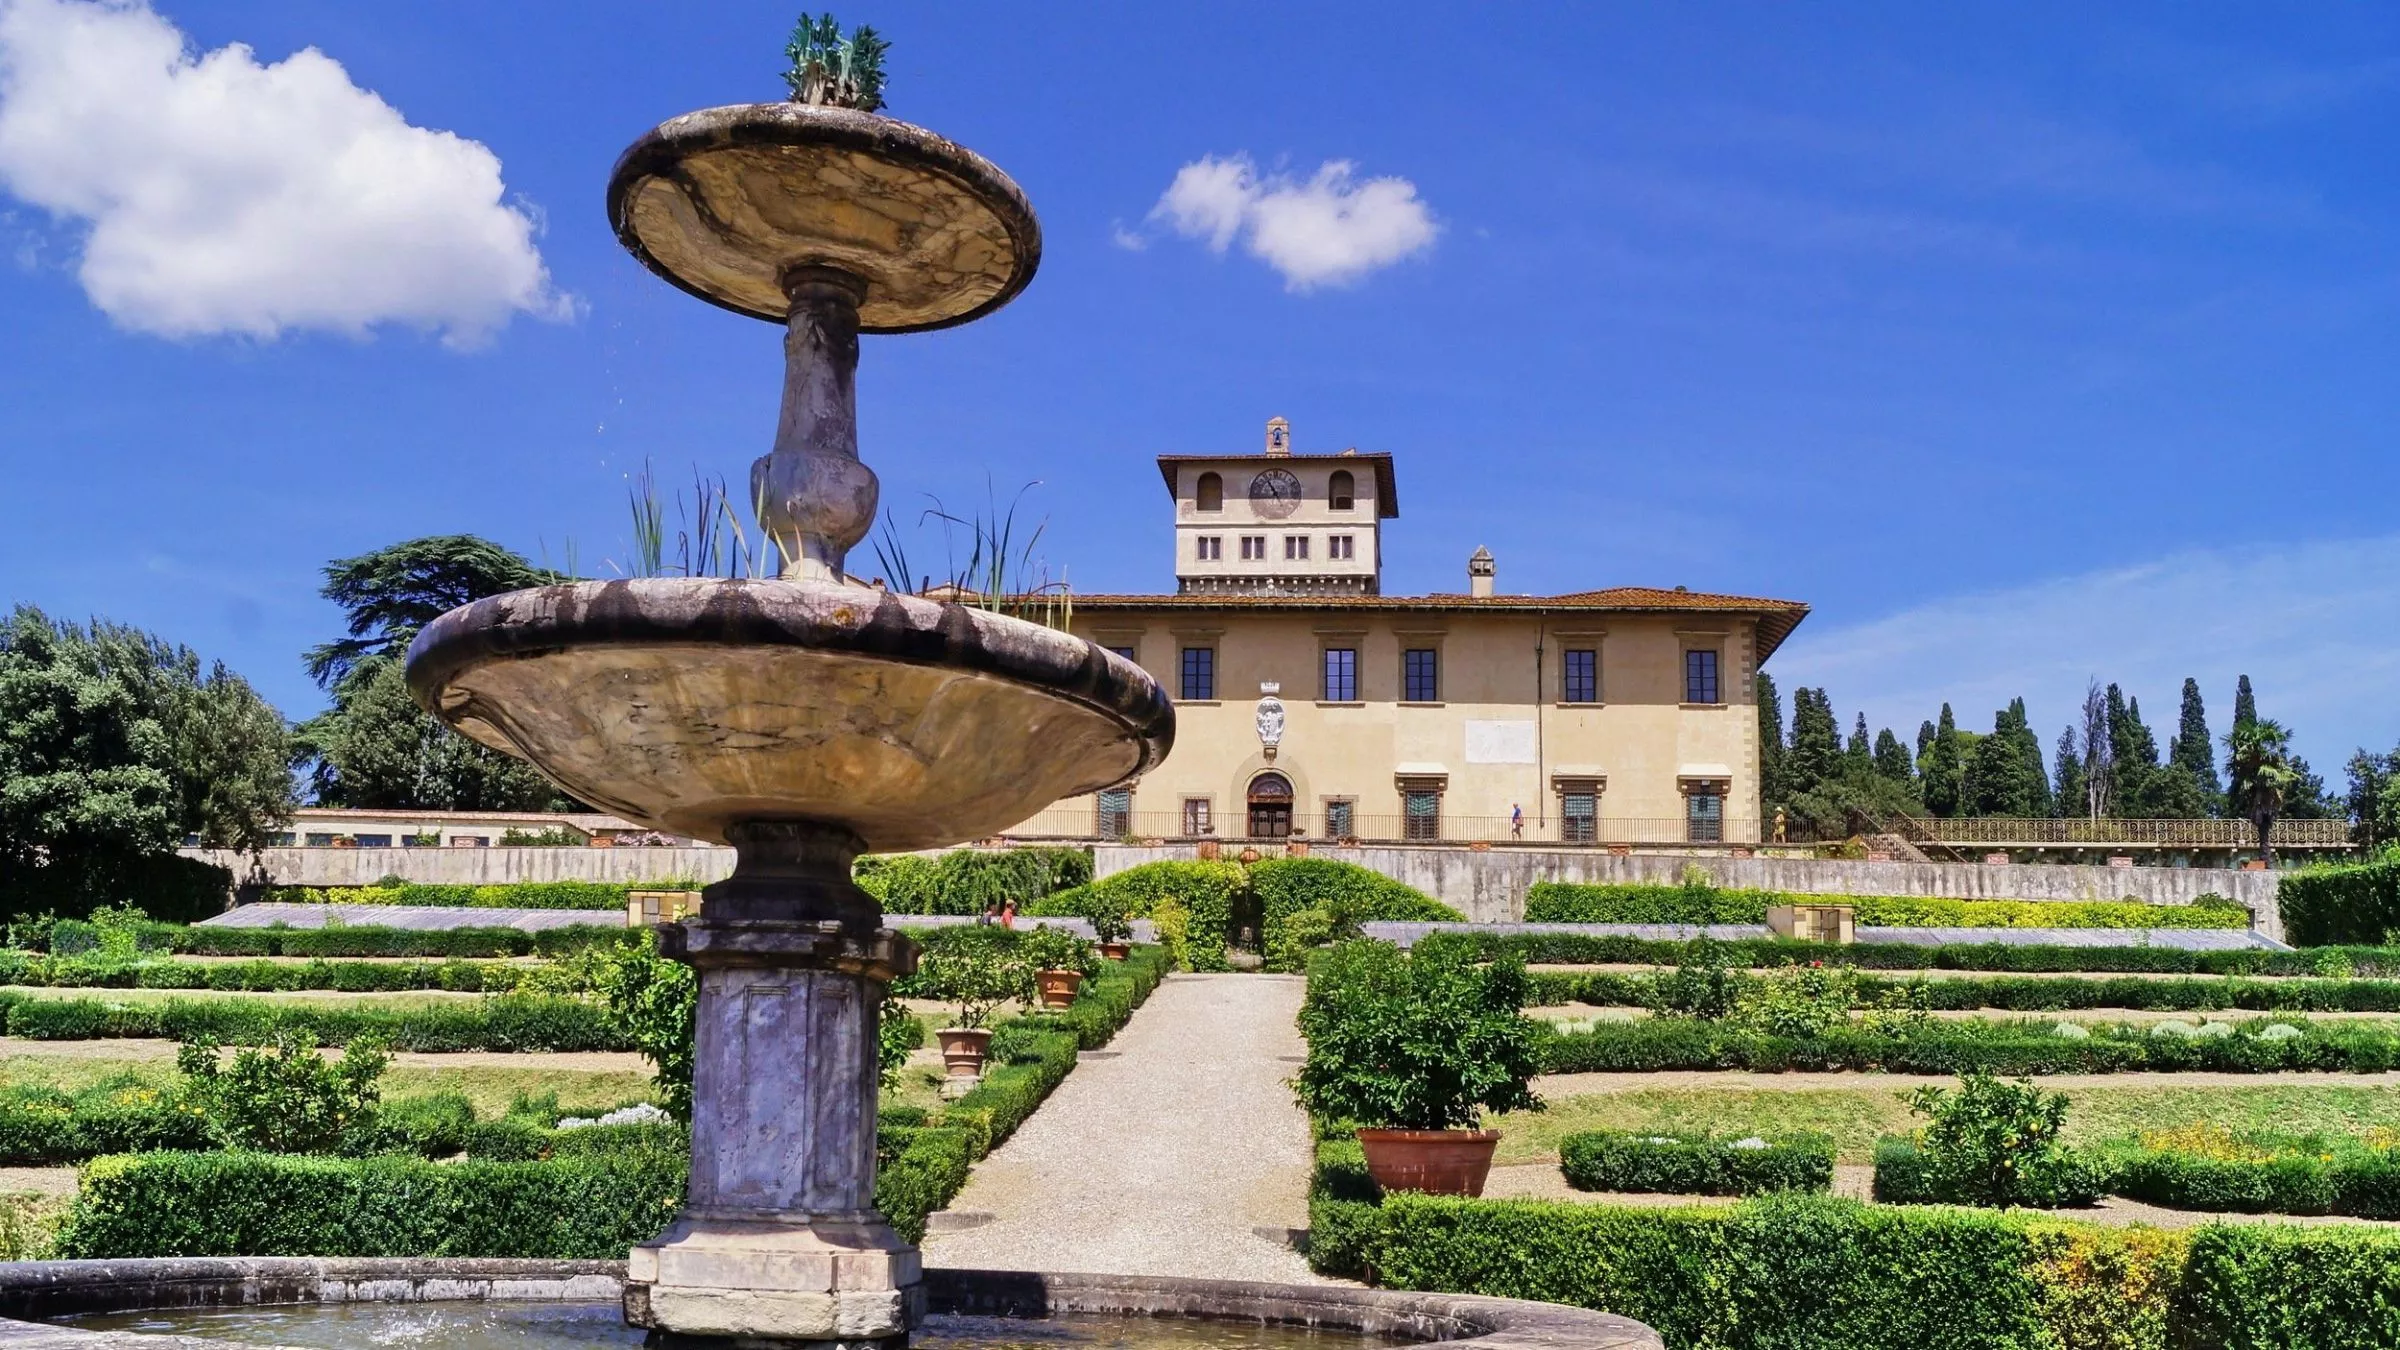 Die Villa Petraia erhielt im 16. Jahrhundert ihr heutiges Aussehen samt Garten im italienischen Stil. Erst 200 Jahre später entstand der Brunnen mit bronzenem Neptun auf der unteren Terrasse